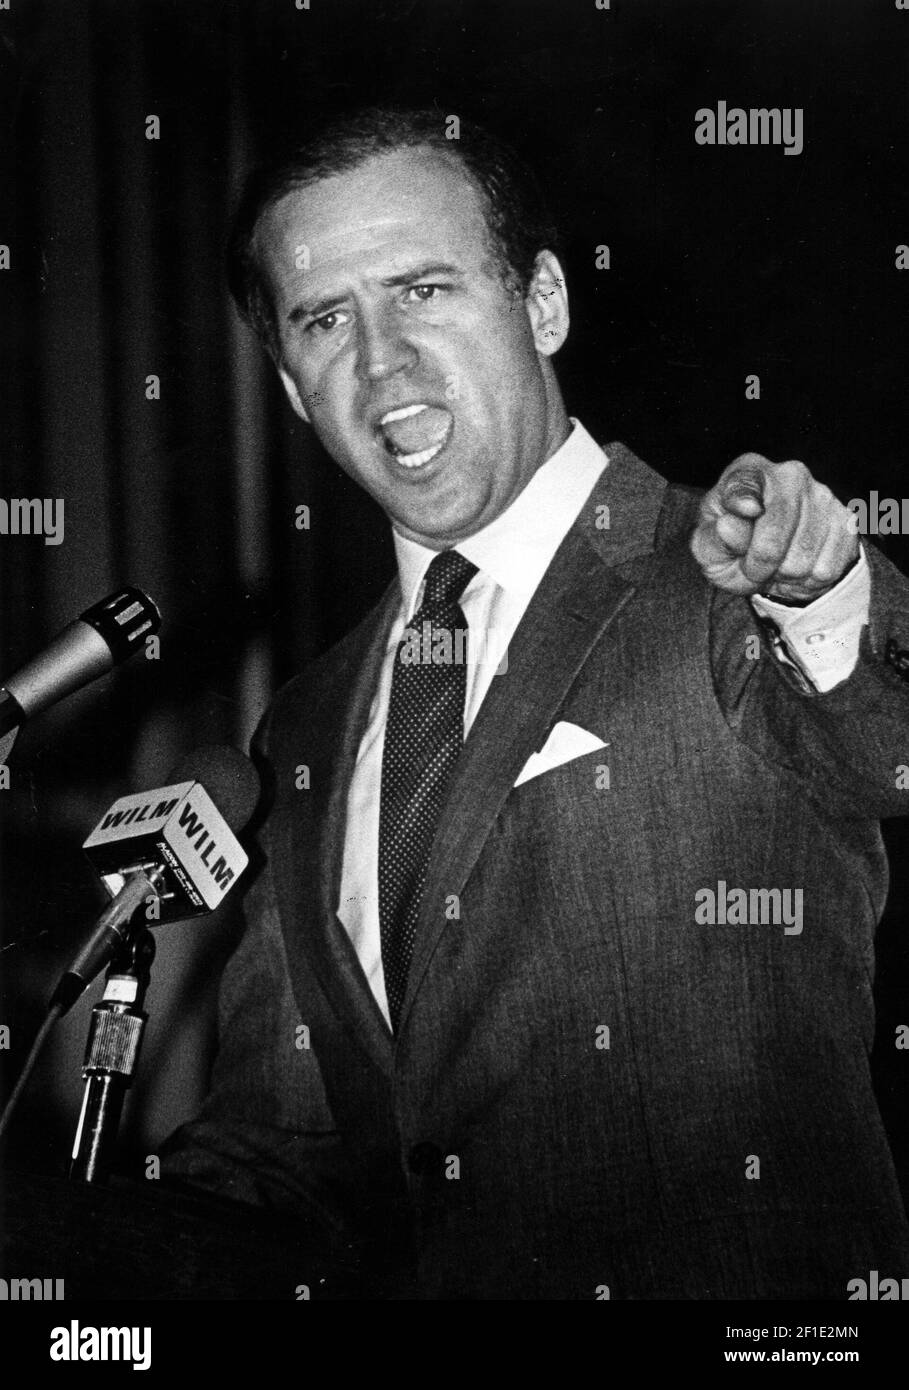 8 de febrero de 1986; Wilmington, DE, EE.UU.; El Senador Joseph R. Biden Jr. Pronuncia un poderoso discurso en la Convención del Estado Democrático. Crédito obligatorio: Susan L. Gregg/The News Journal-USA TODAY NETWORK/Sipa USA Foto de stock